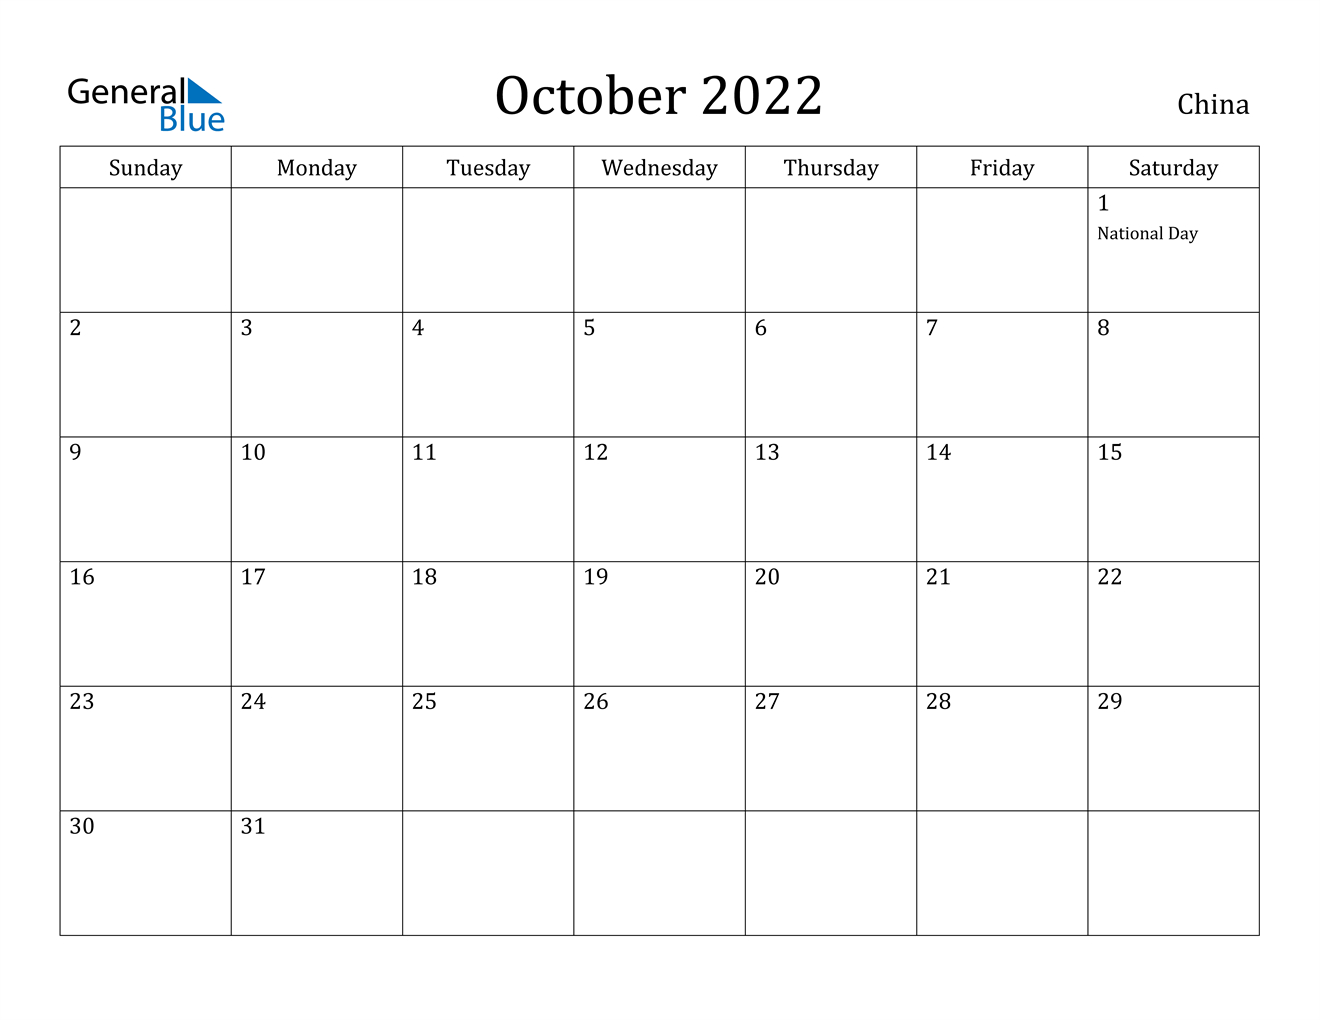 China October 2022 Calendar With Holidays